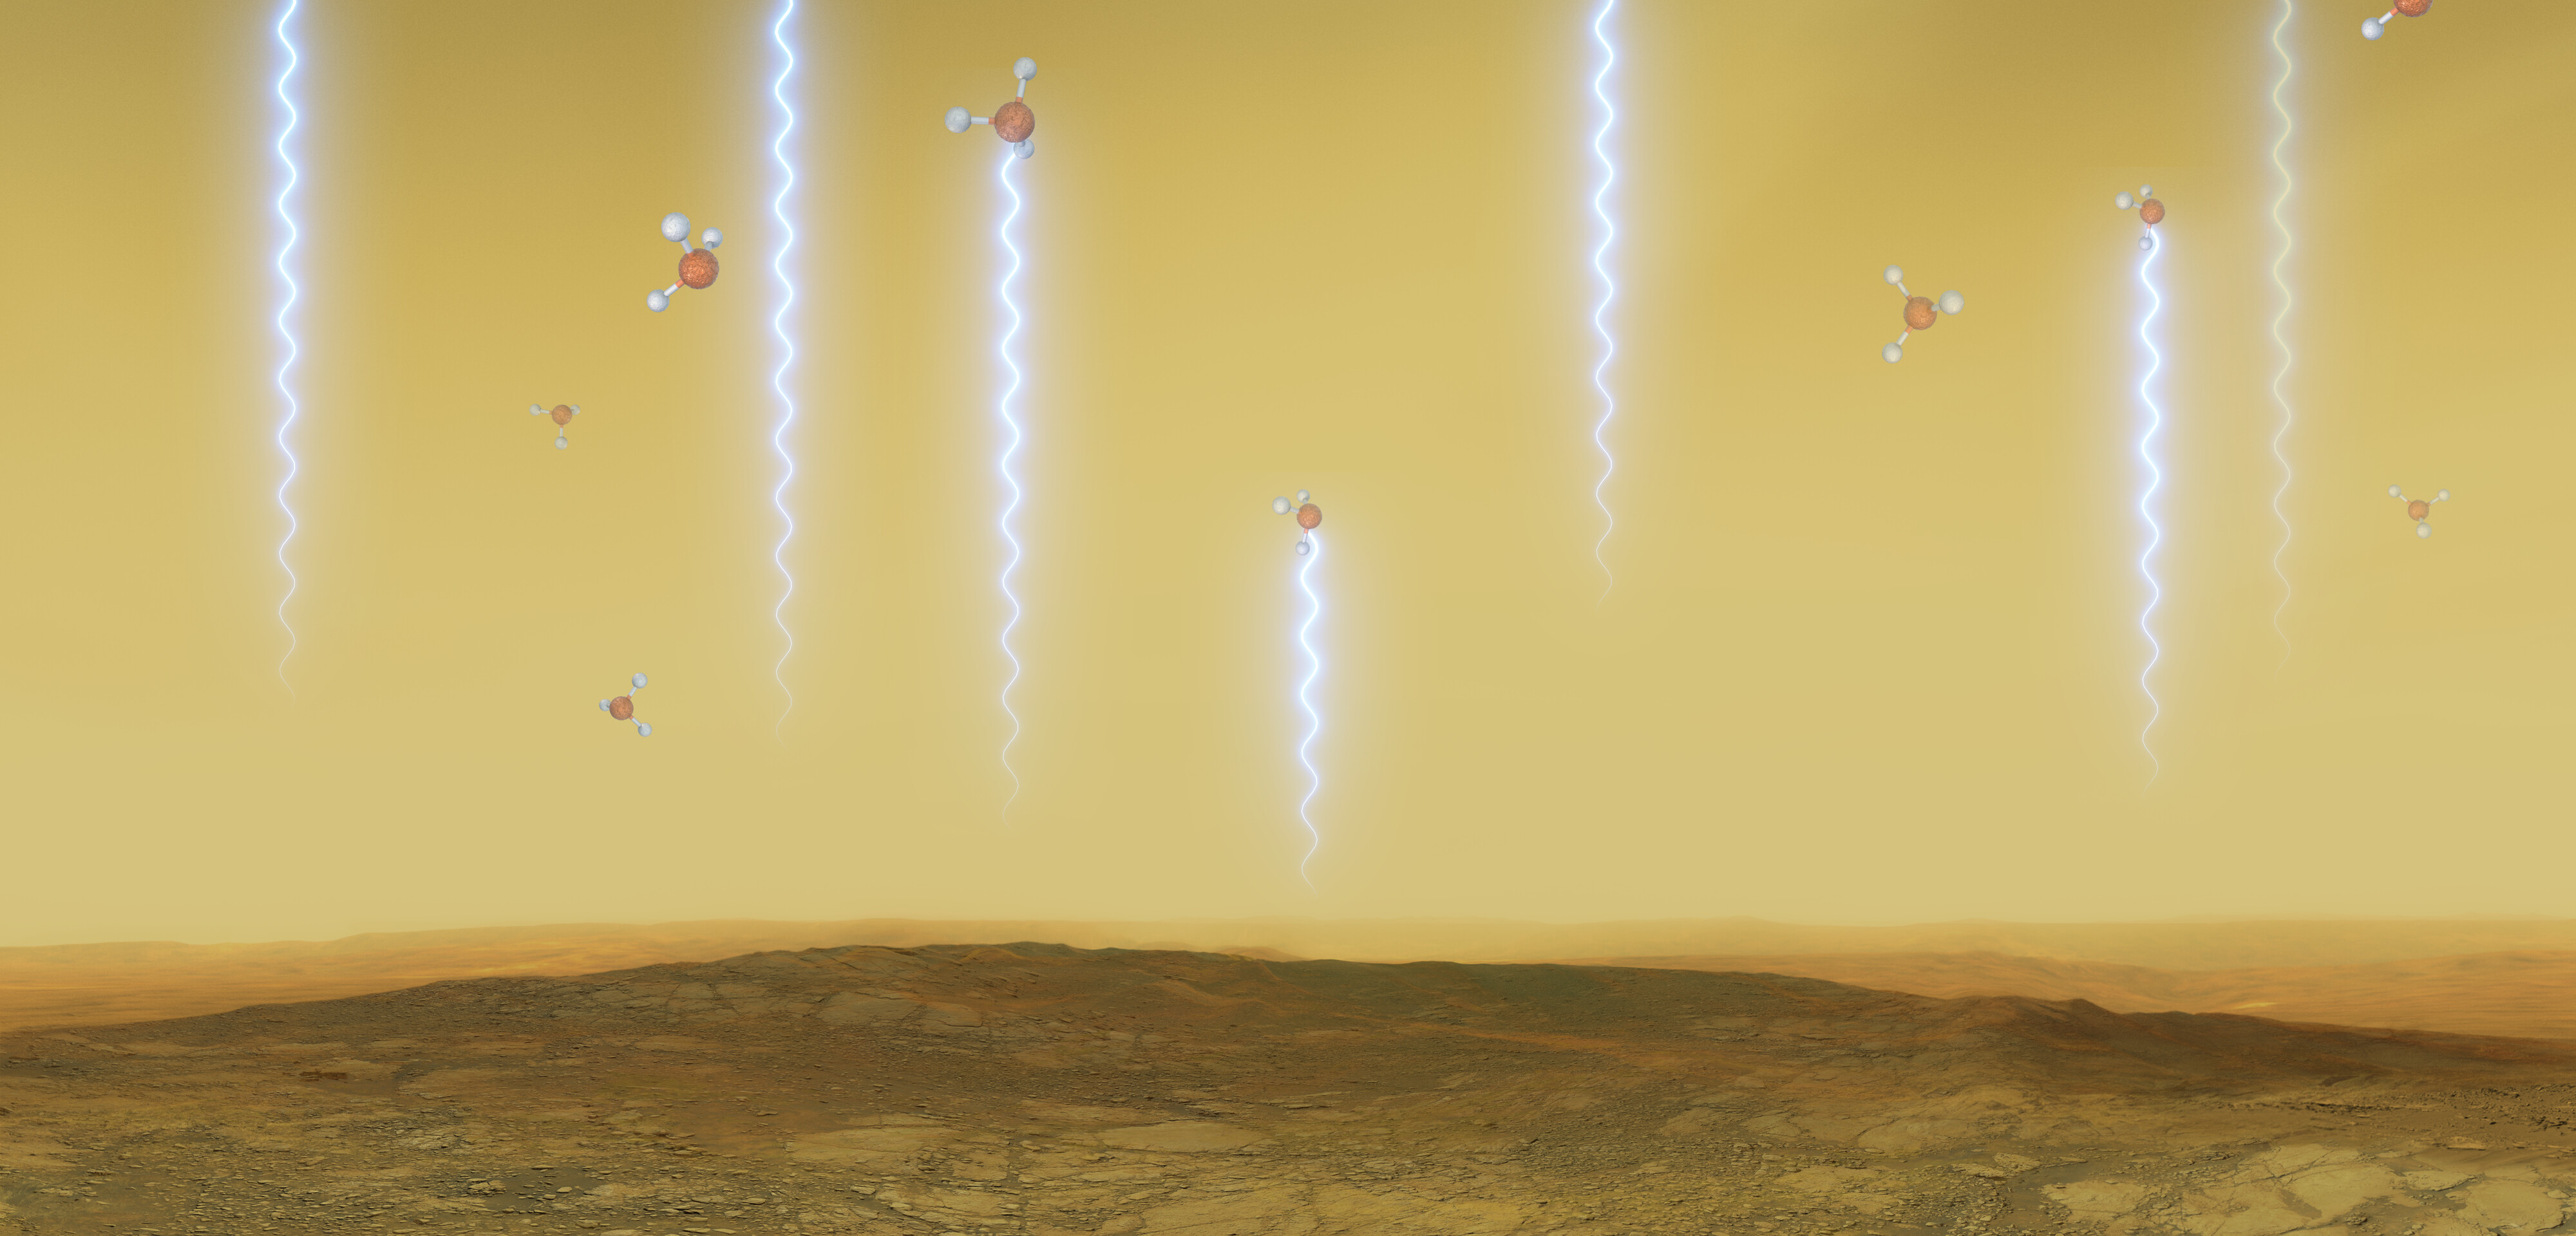 Artystyczna ilustracja powierzchni i atmosfery Wenus